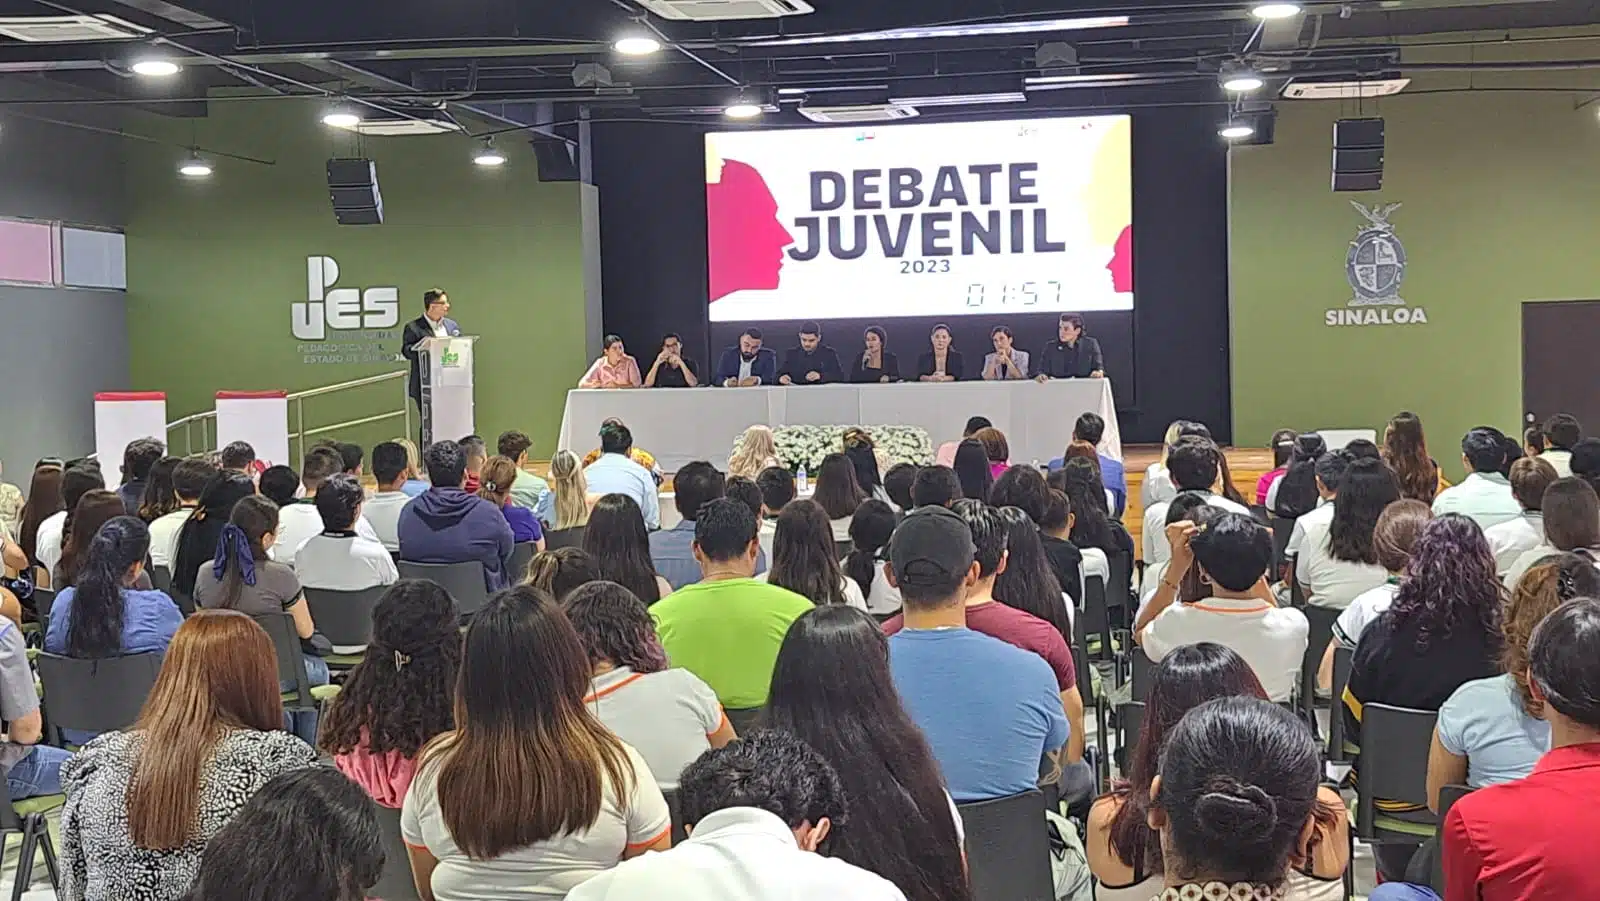 Debate Juvenil 2023 organizado por el Instituto Sinaloense de la Juventud y el Congreso del Estado